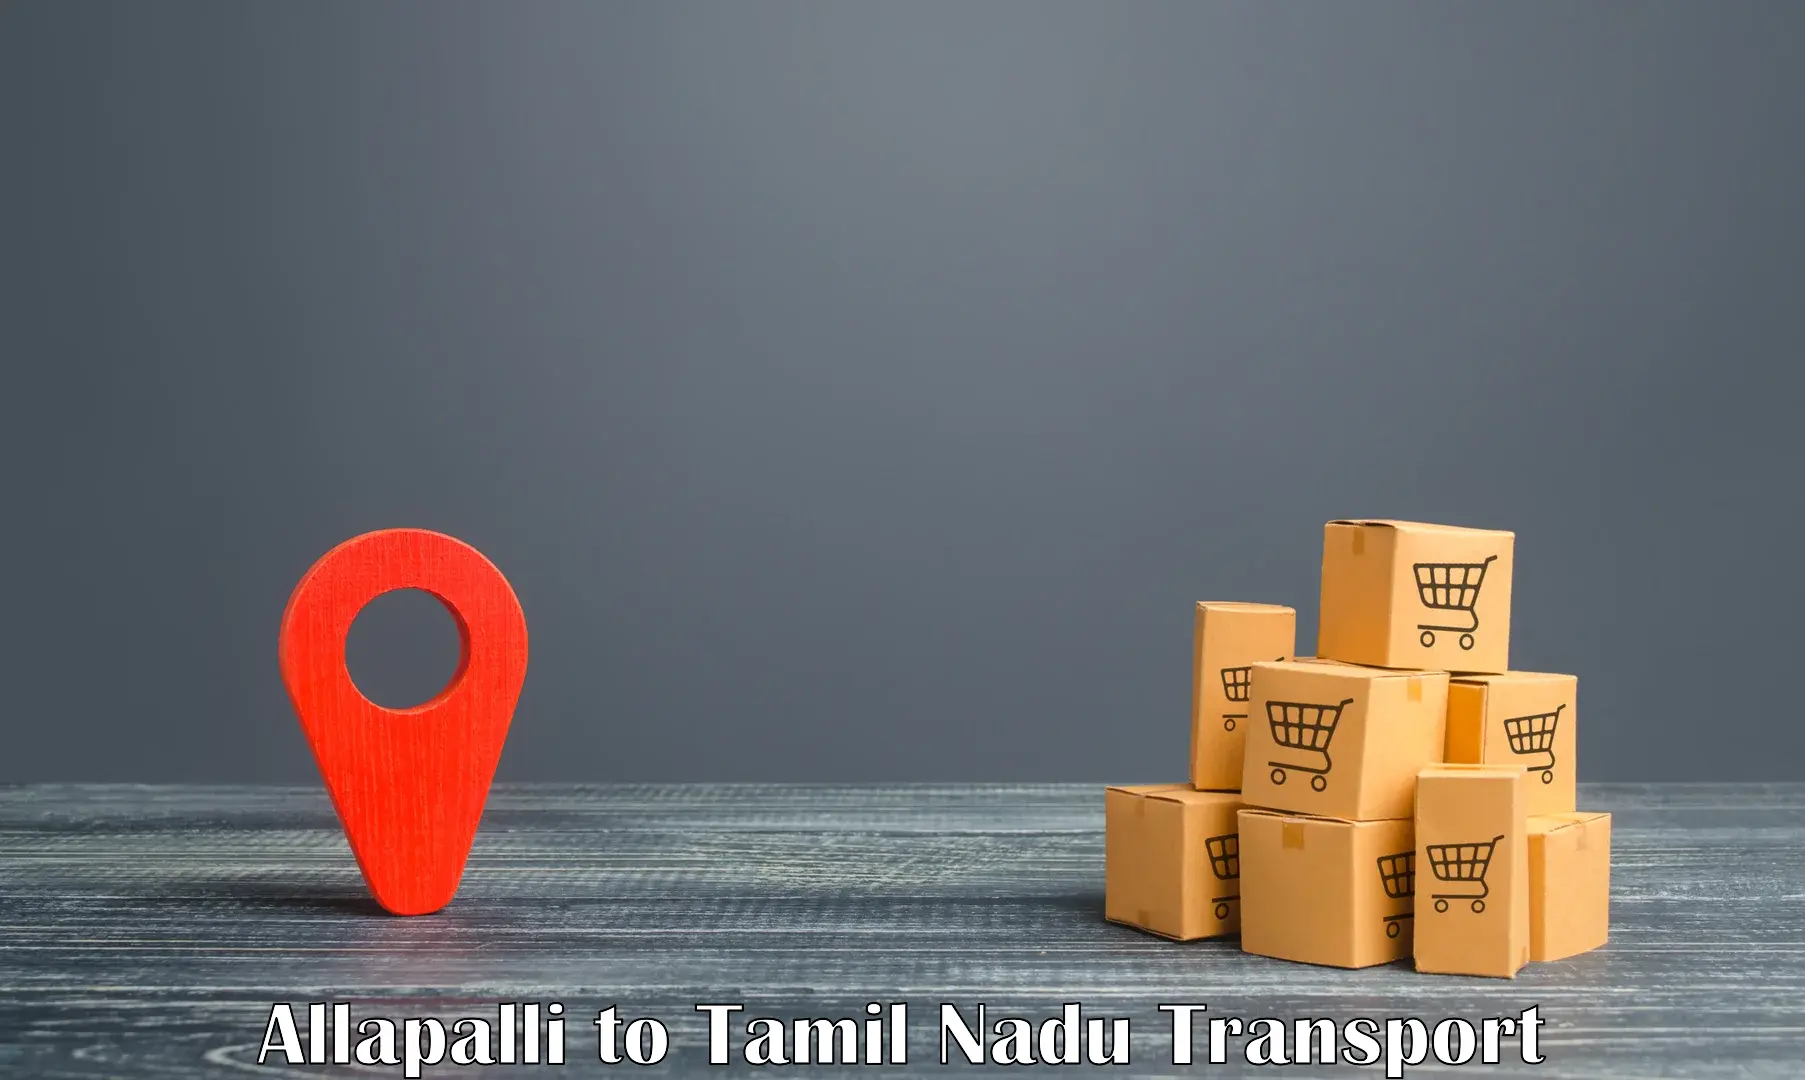 Delivery service Allapalli to Chennai